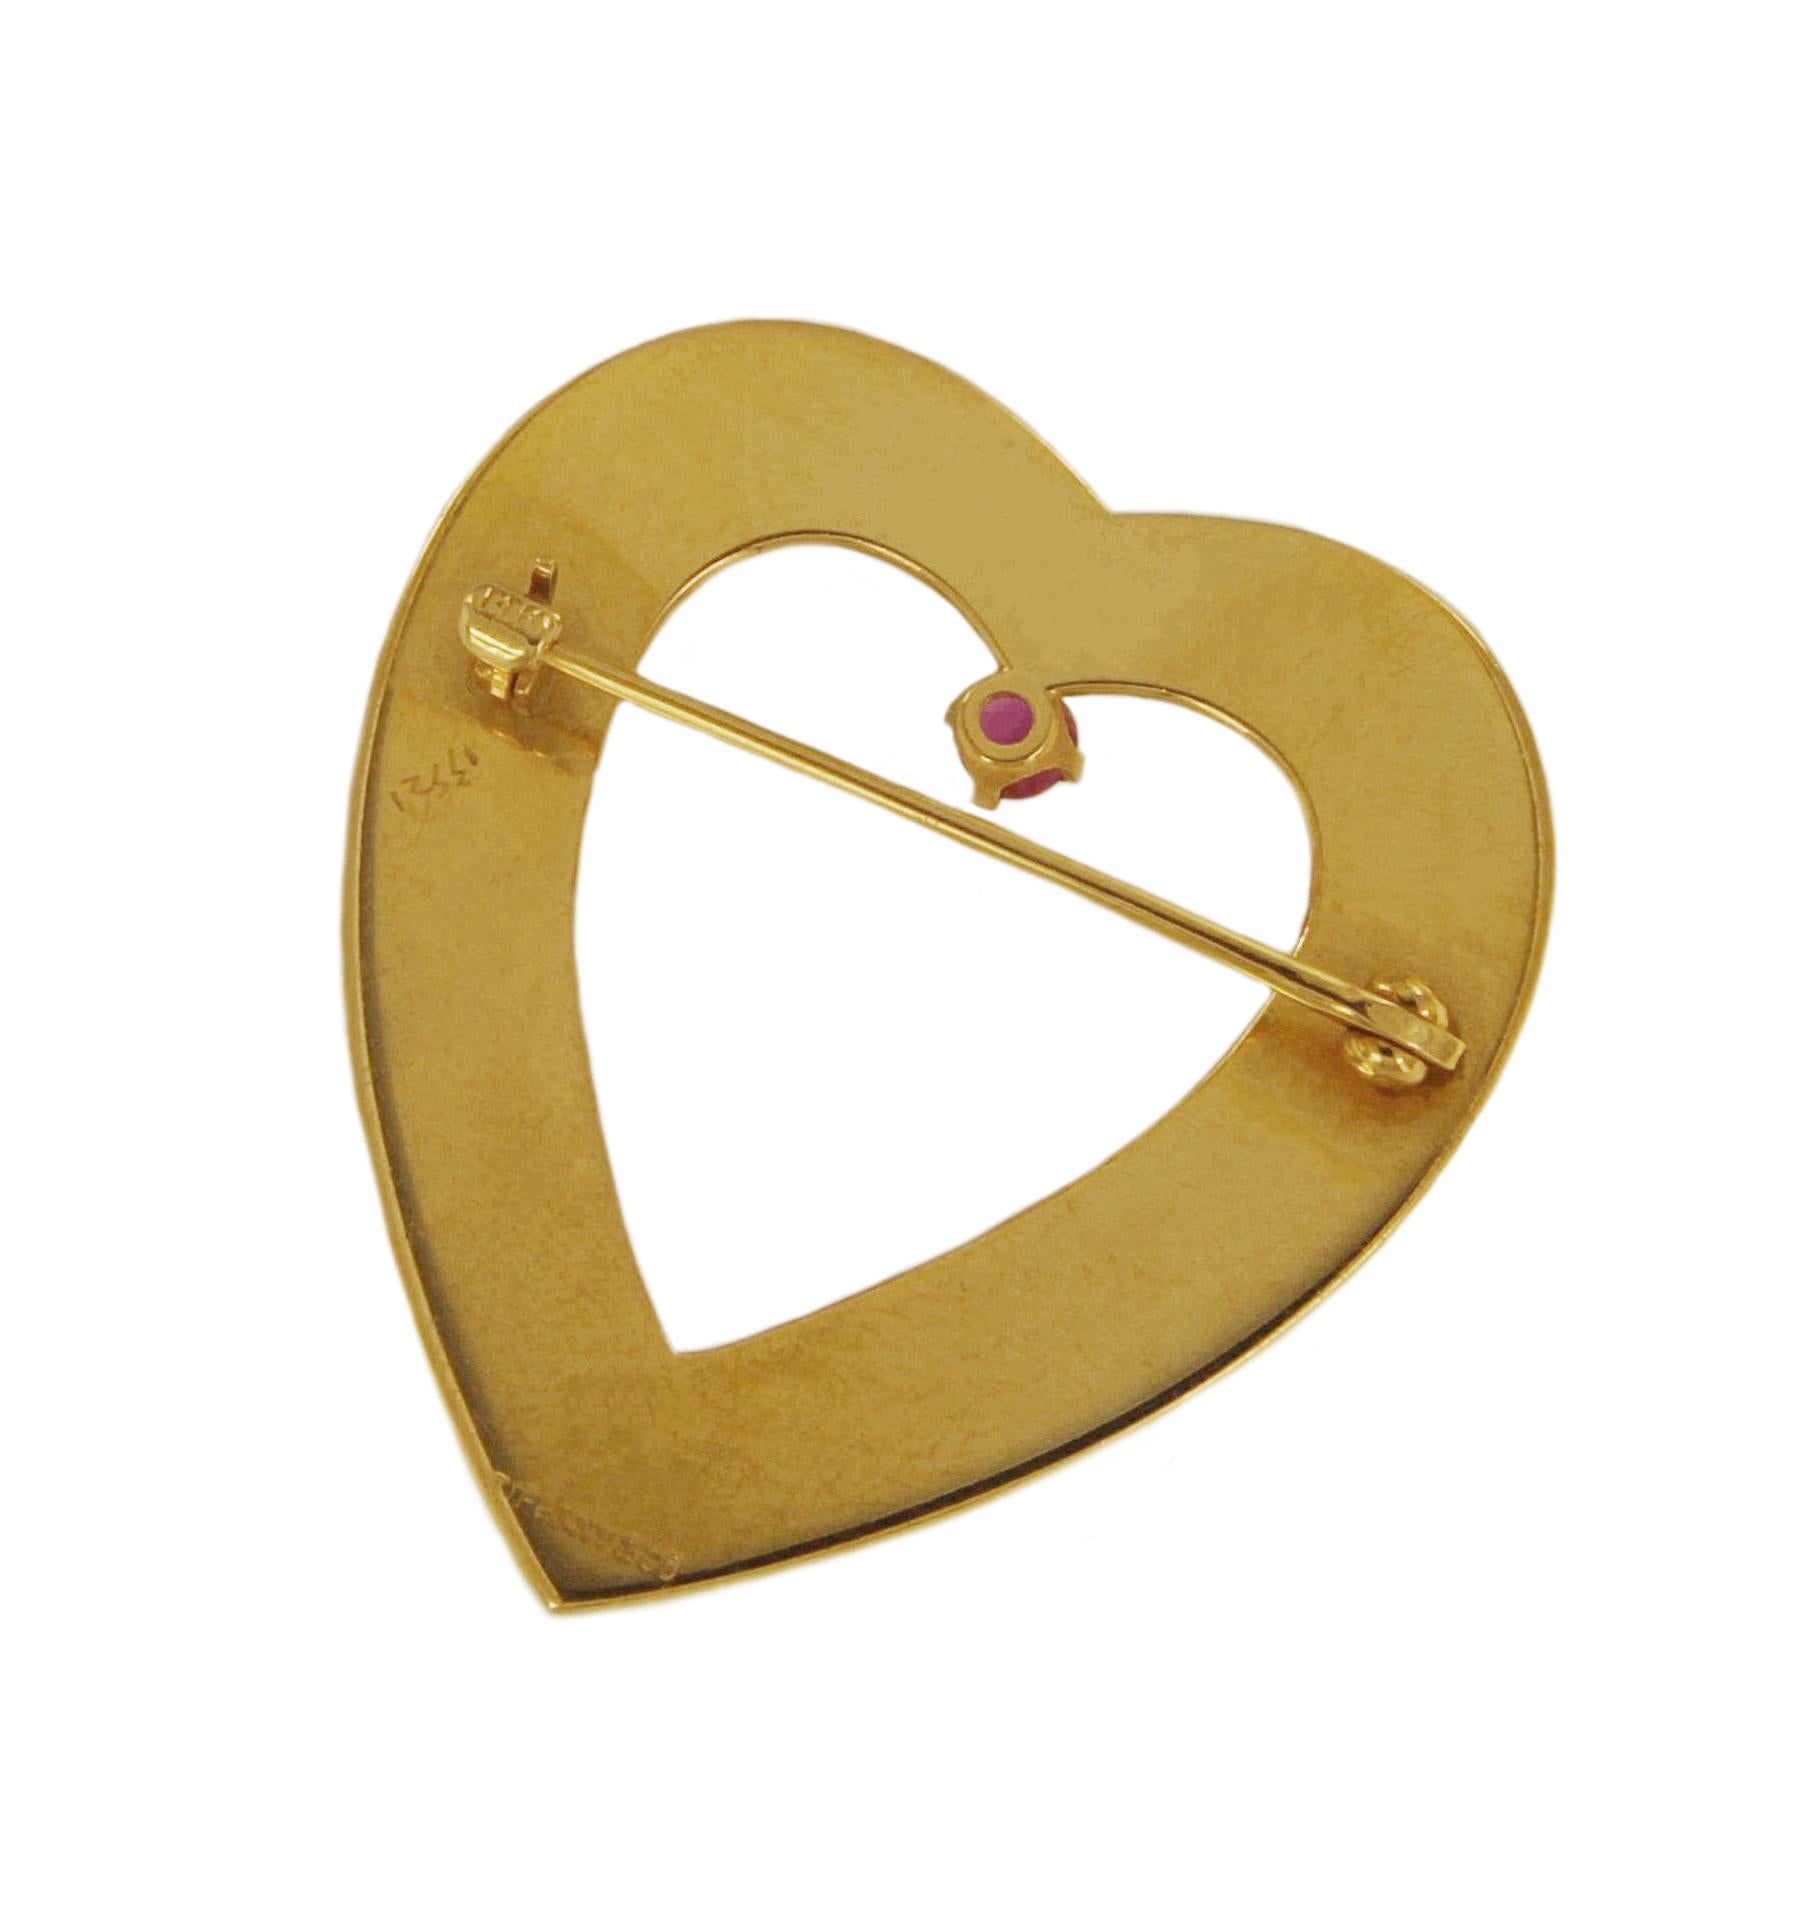 gold heart brooch